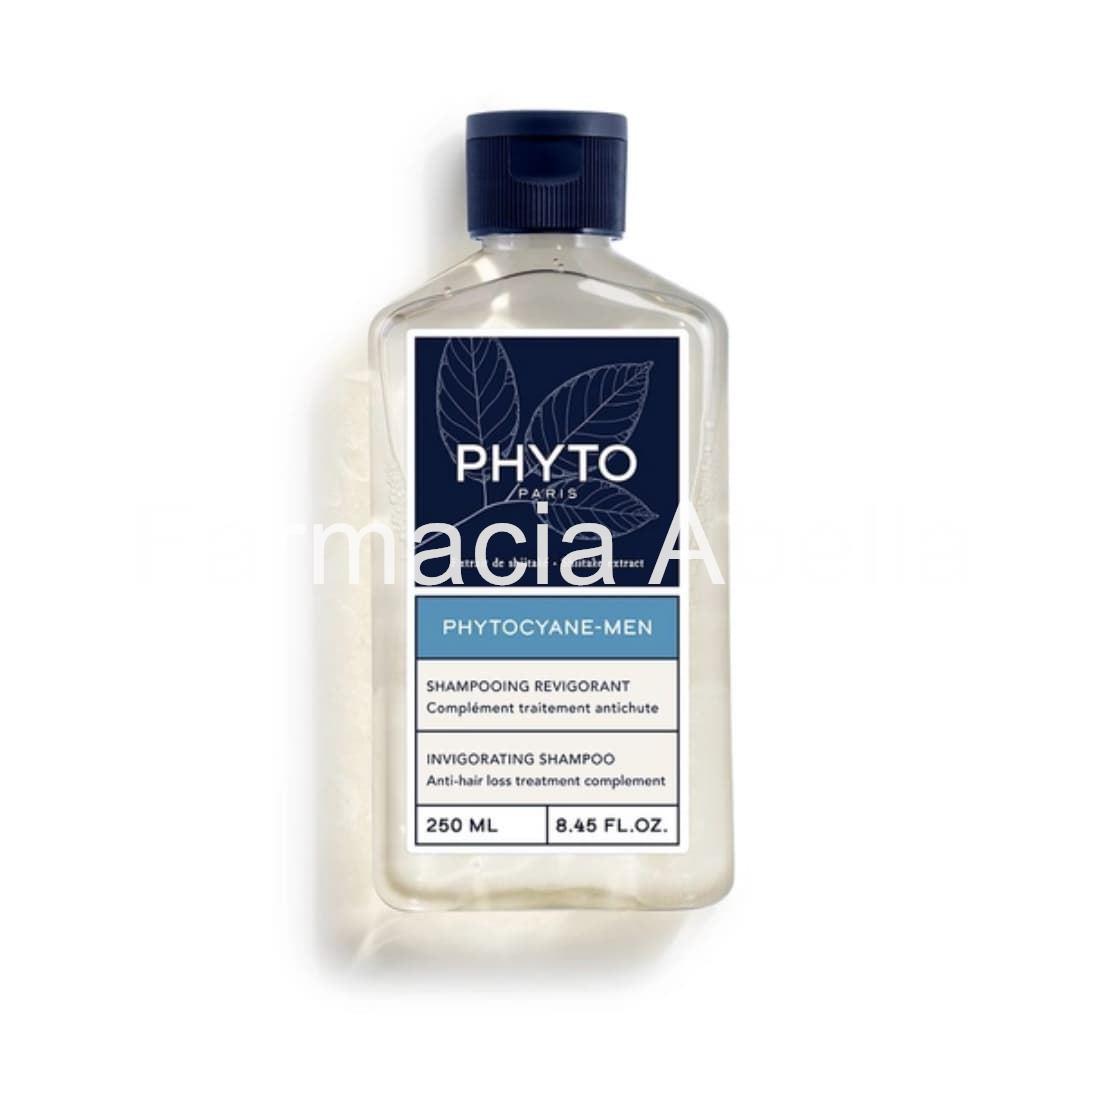 Phytocyane-Men champú revitalizante 250 ml - Imagen 1